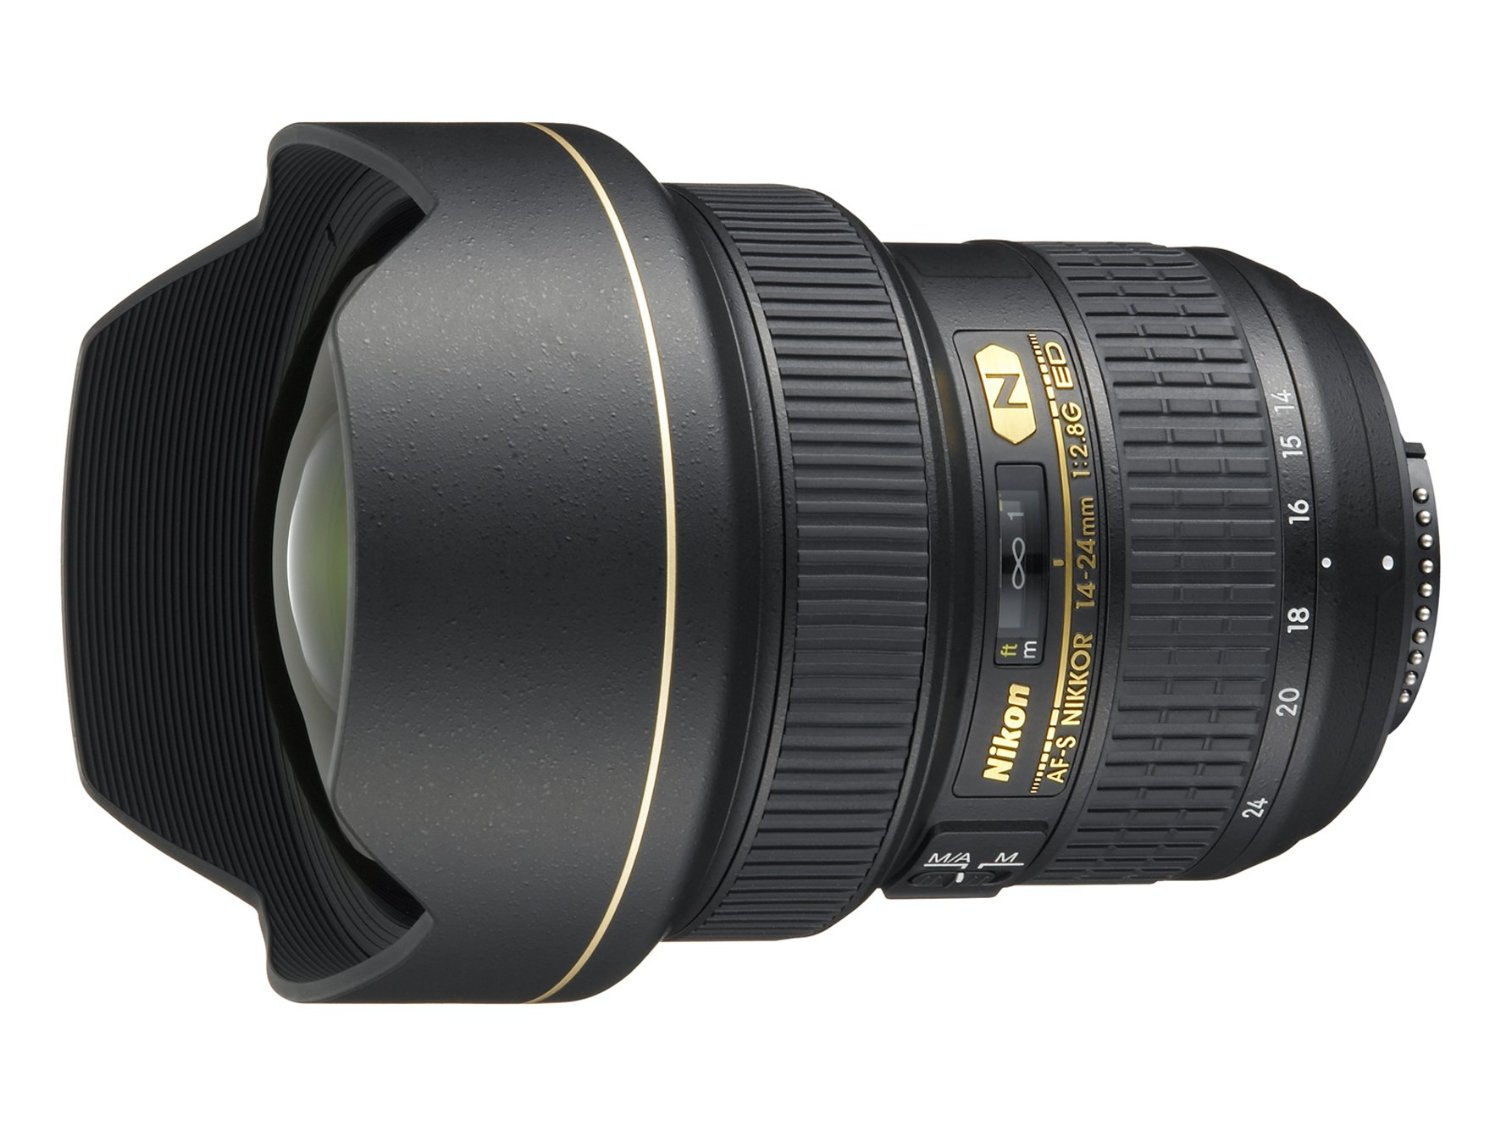 Nikon AF-S FX NIKKOR 14-24mm f/2.8G ED Zoom Lens with Auto Focus for DSLR Cameras